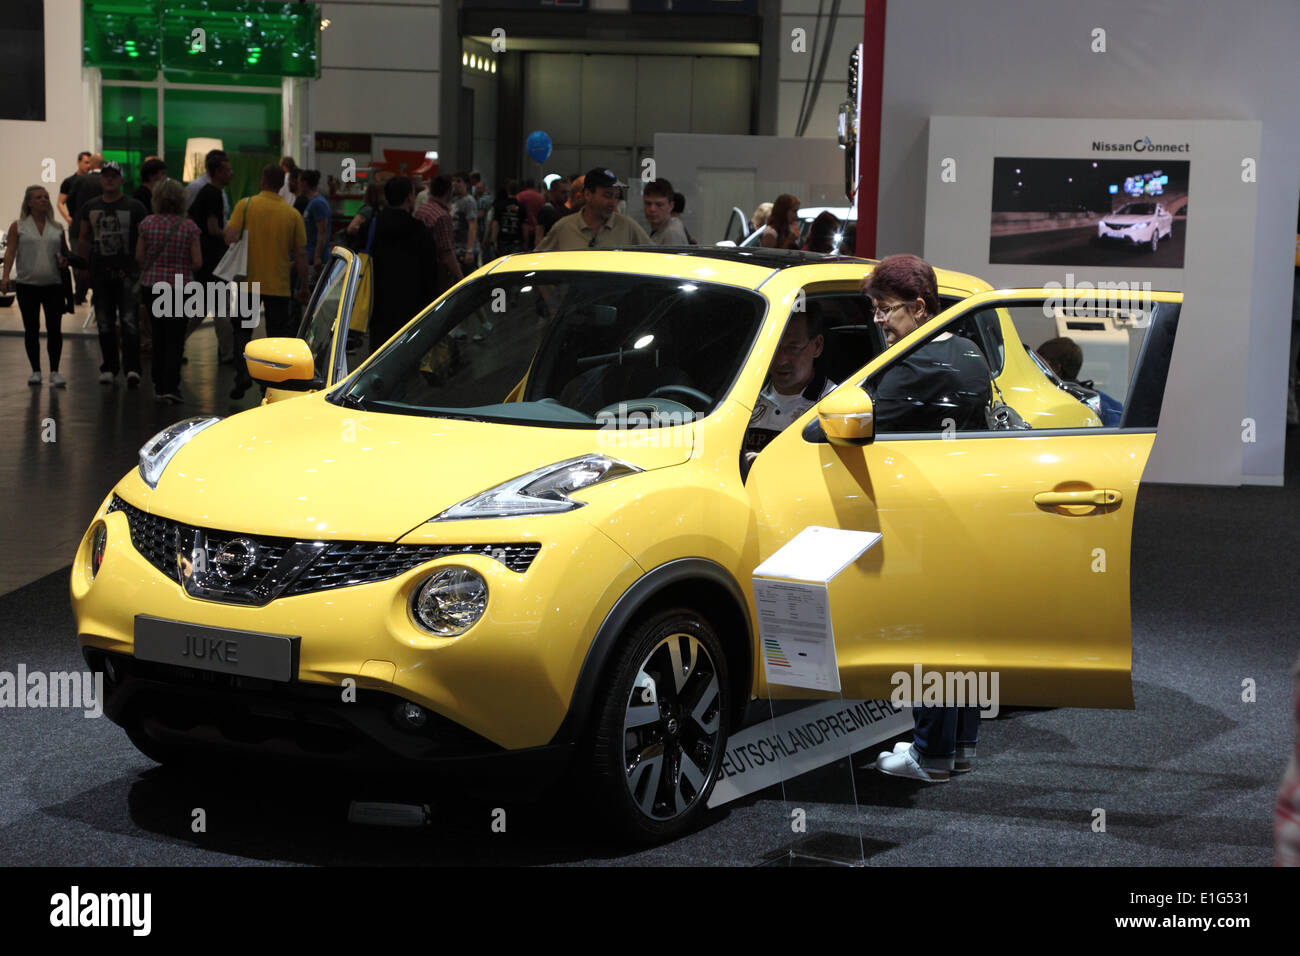 Nissan Juke à l'AMI - Salon International de l'Auto Mobile le 1er juin 2014 à Leipzig, Saxe, Allemagne Banque D'Images